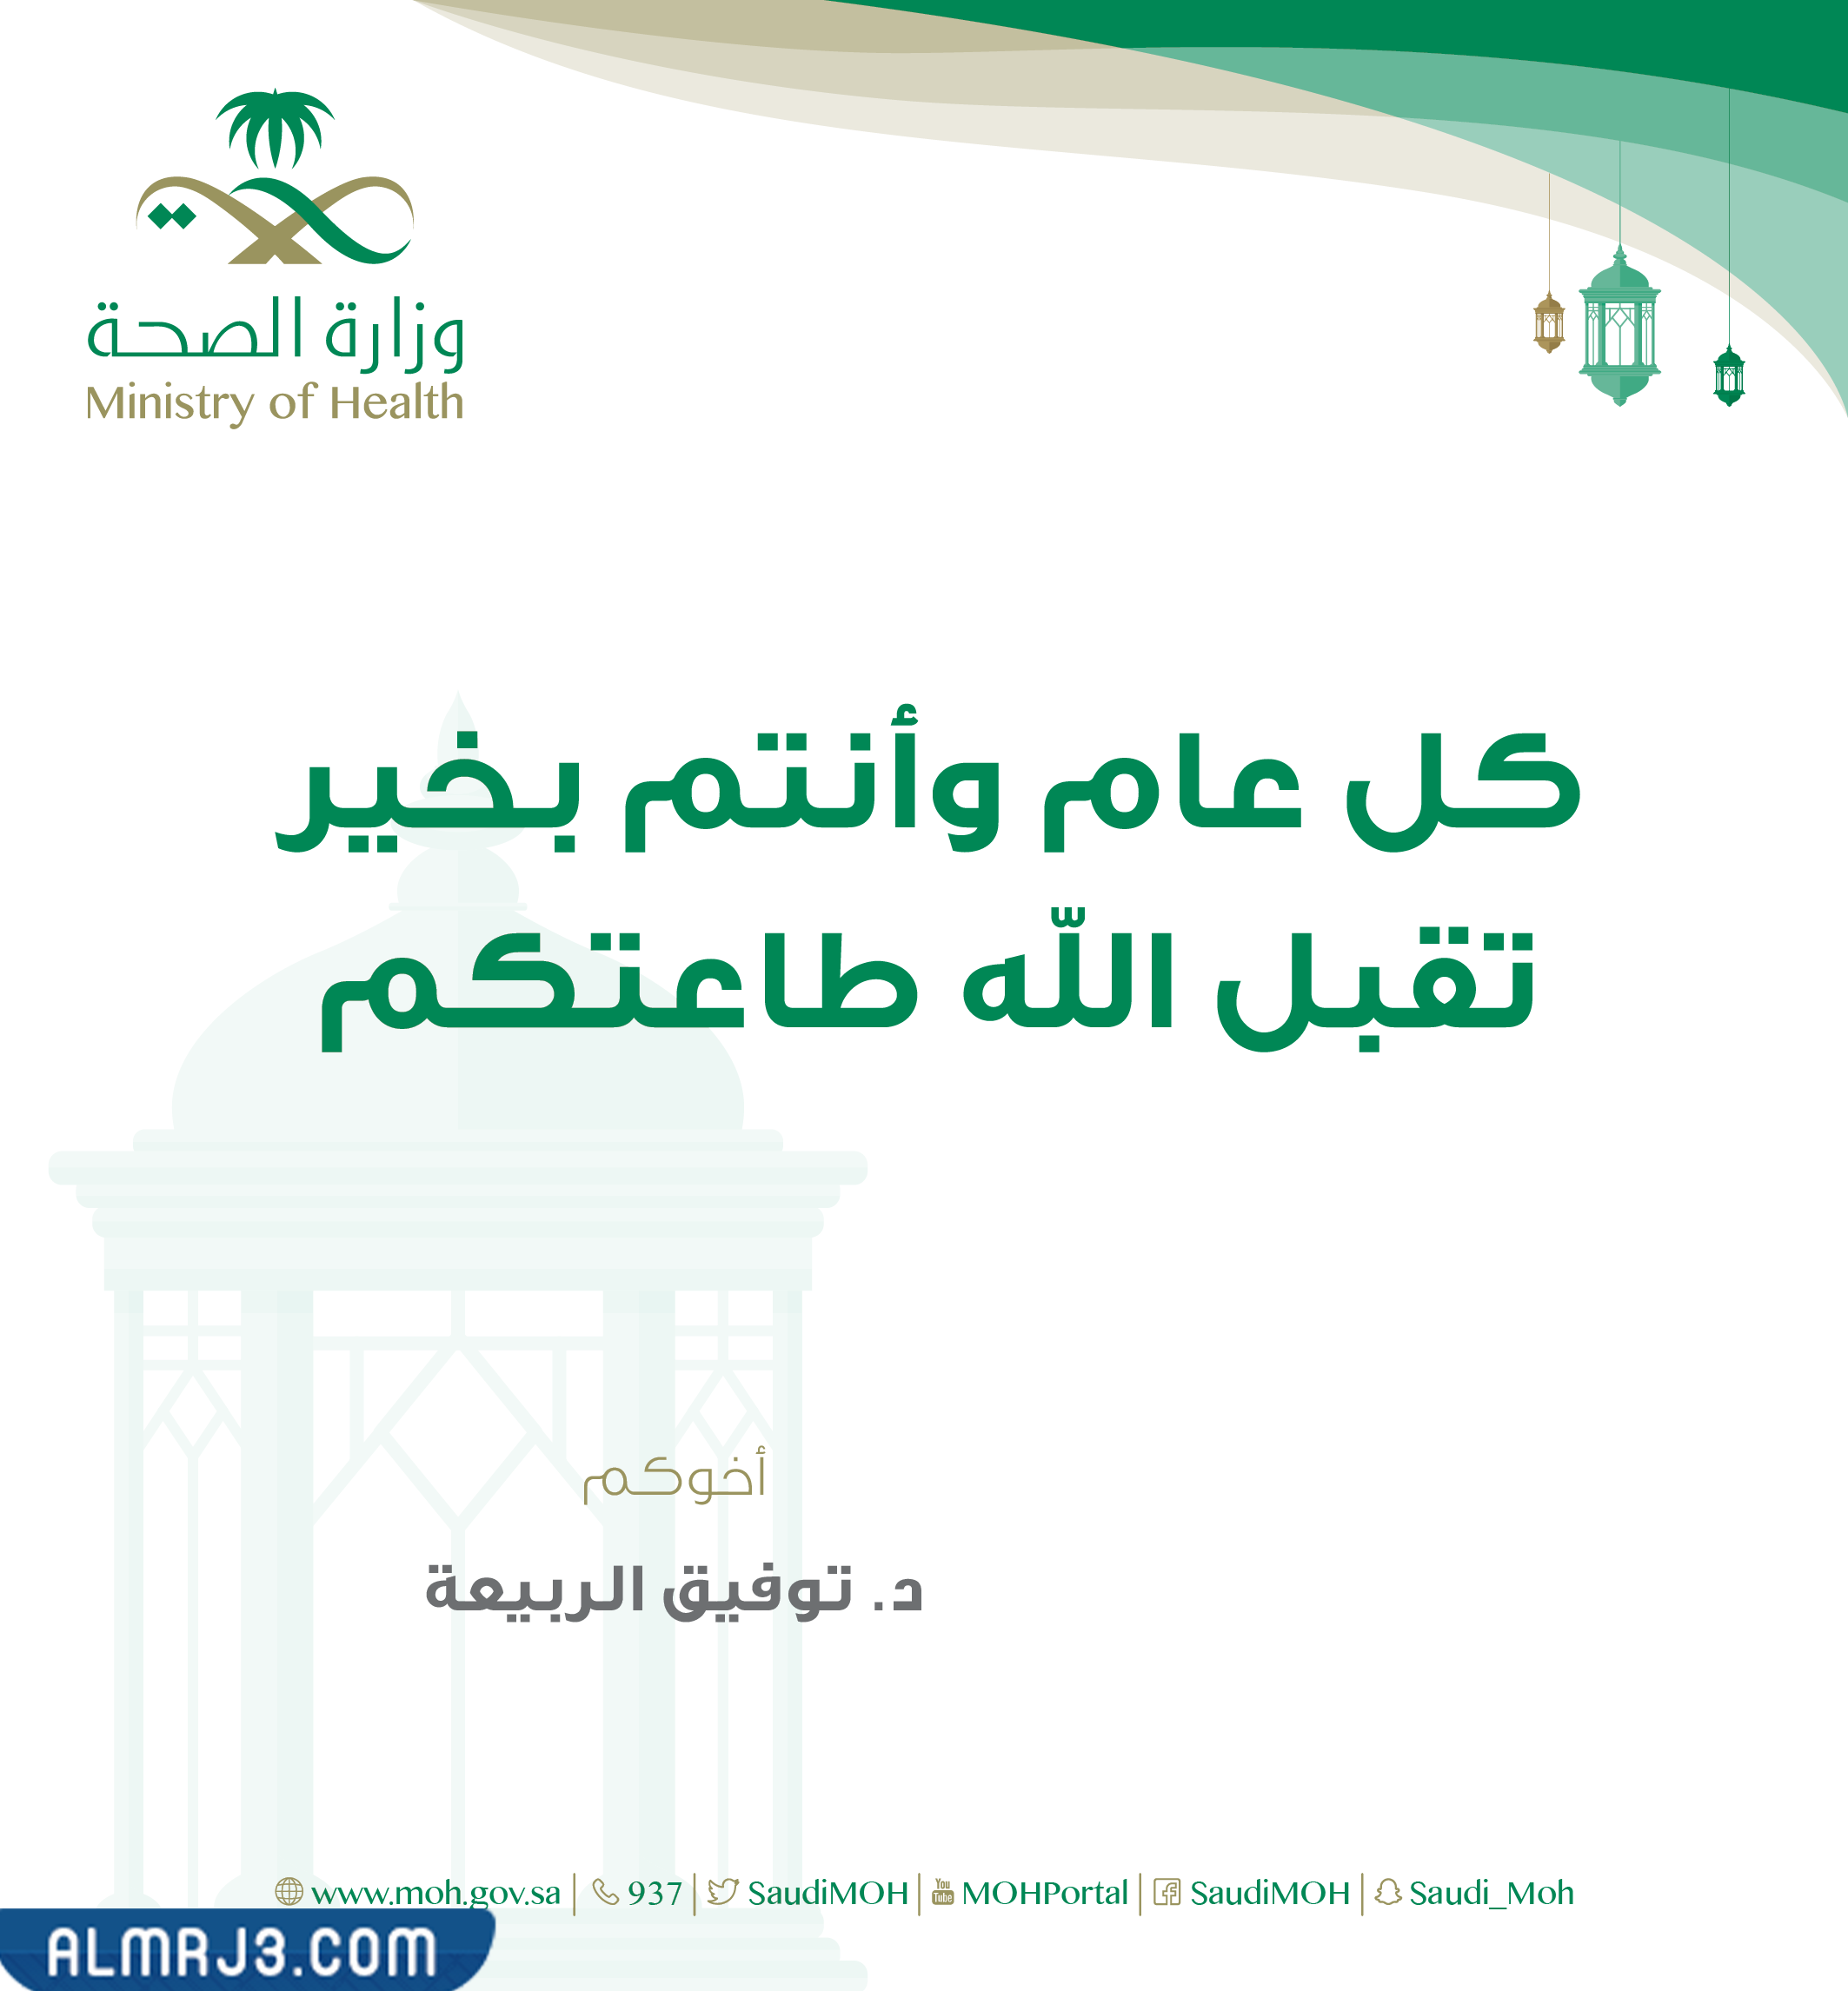 بطاقة تهنئة رمضان وزارة الصحة 1443